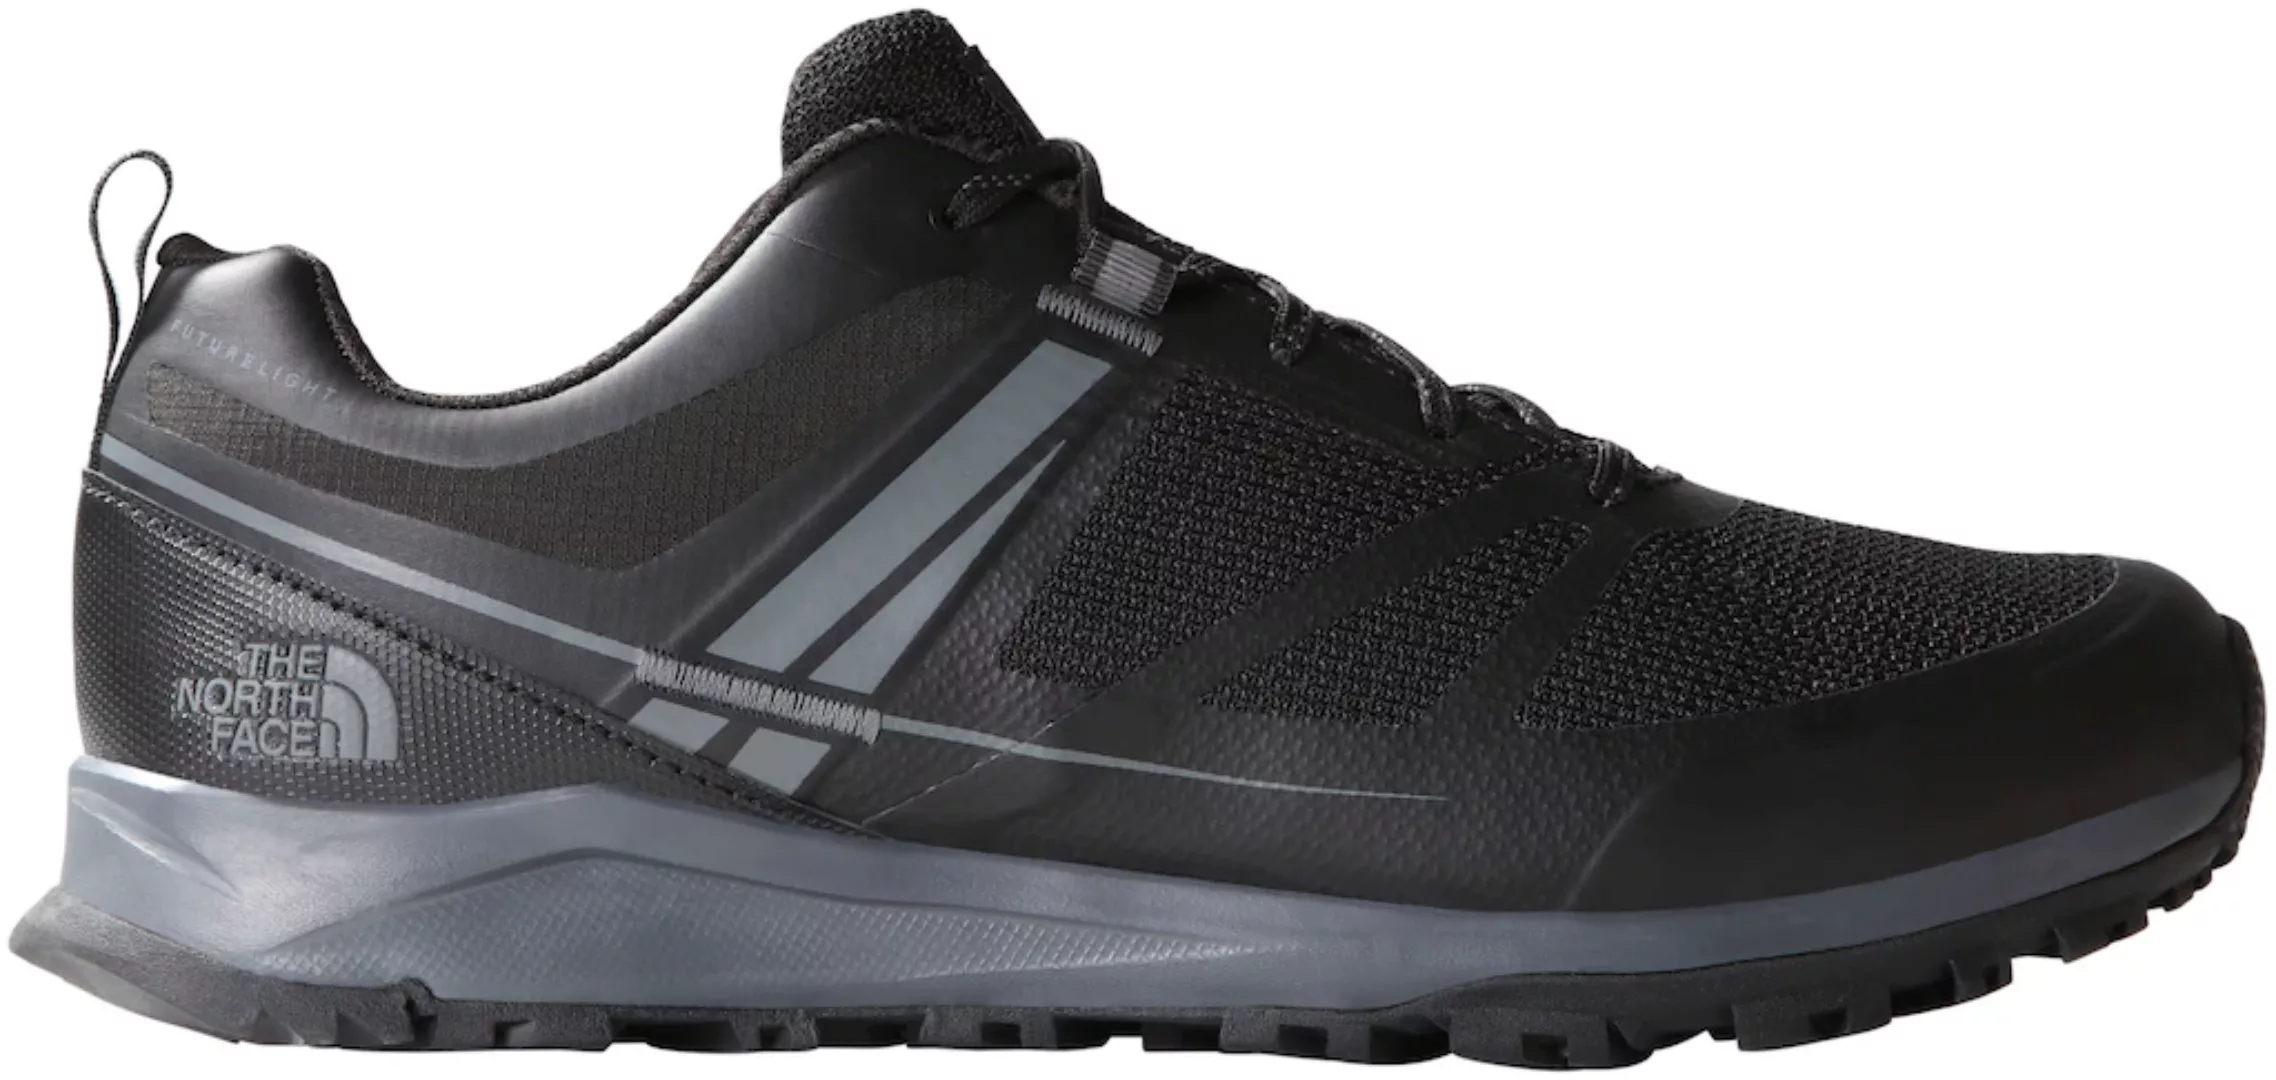 The North Face Litewave Futurelight Schuhe EU 42 Grey,Black günstig online kaufen